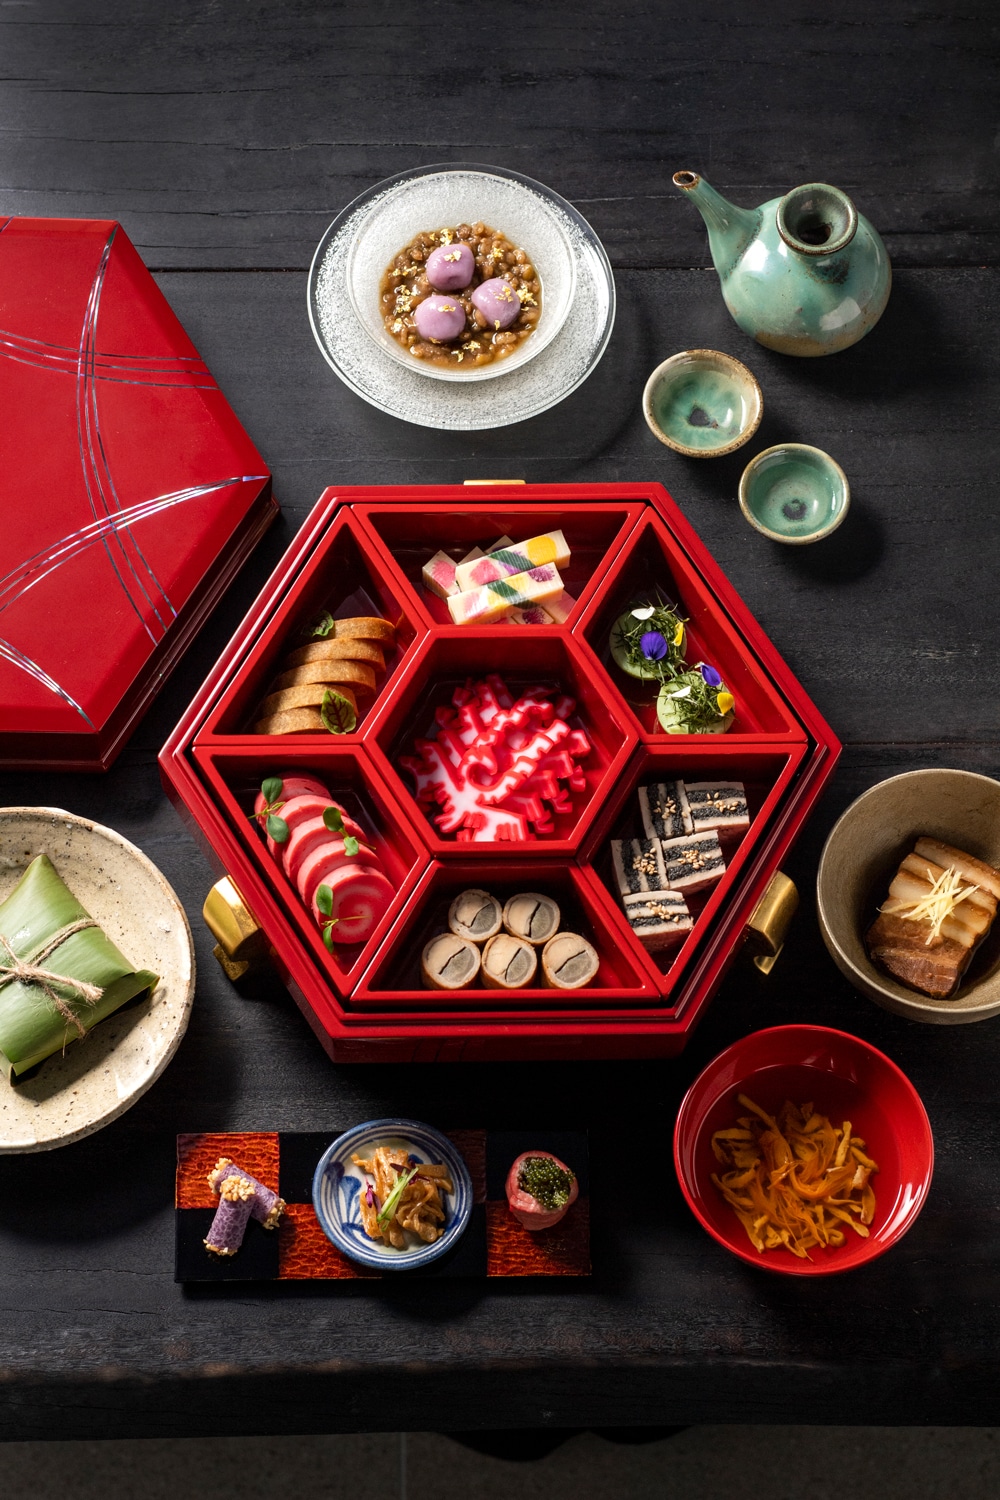 「花いか」「ビラガラマチ」「ミヌダル」をはじめとした琉球伝統の美味をふんだんに盛り合わせた「東道盆」をメインに、「中身のお吸い物」「ラフテー」など宮廷料理の贅沢な風味を存分に。